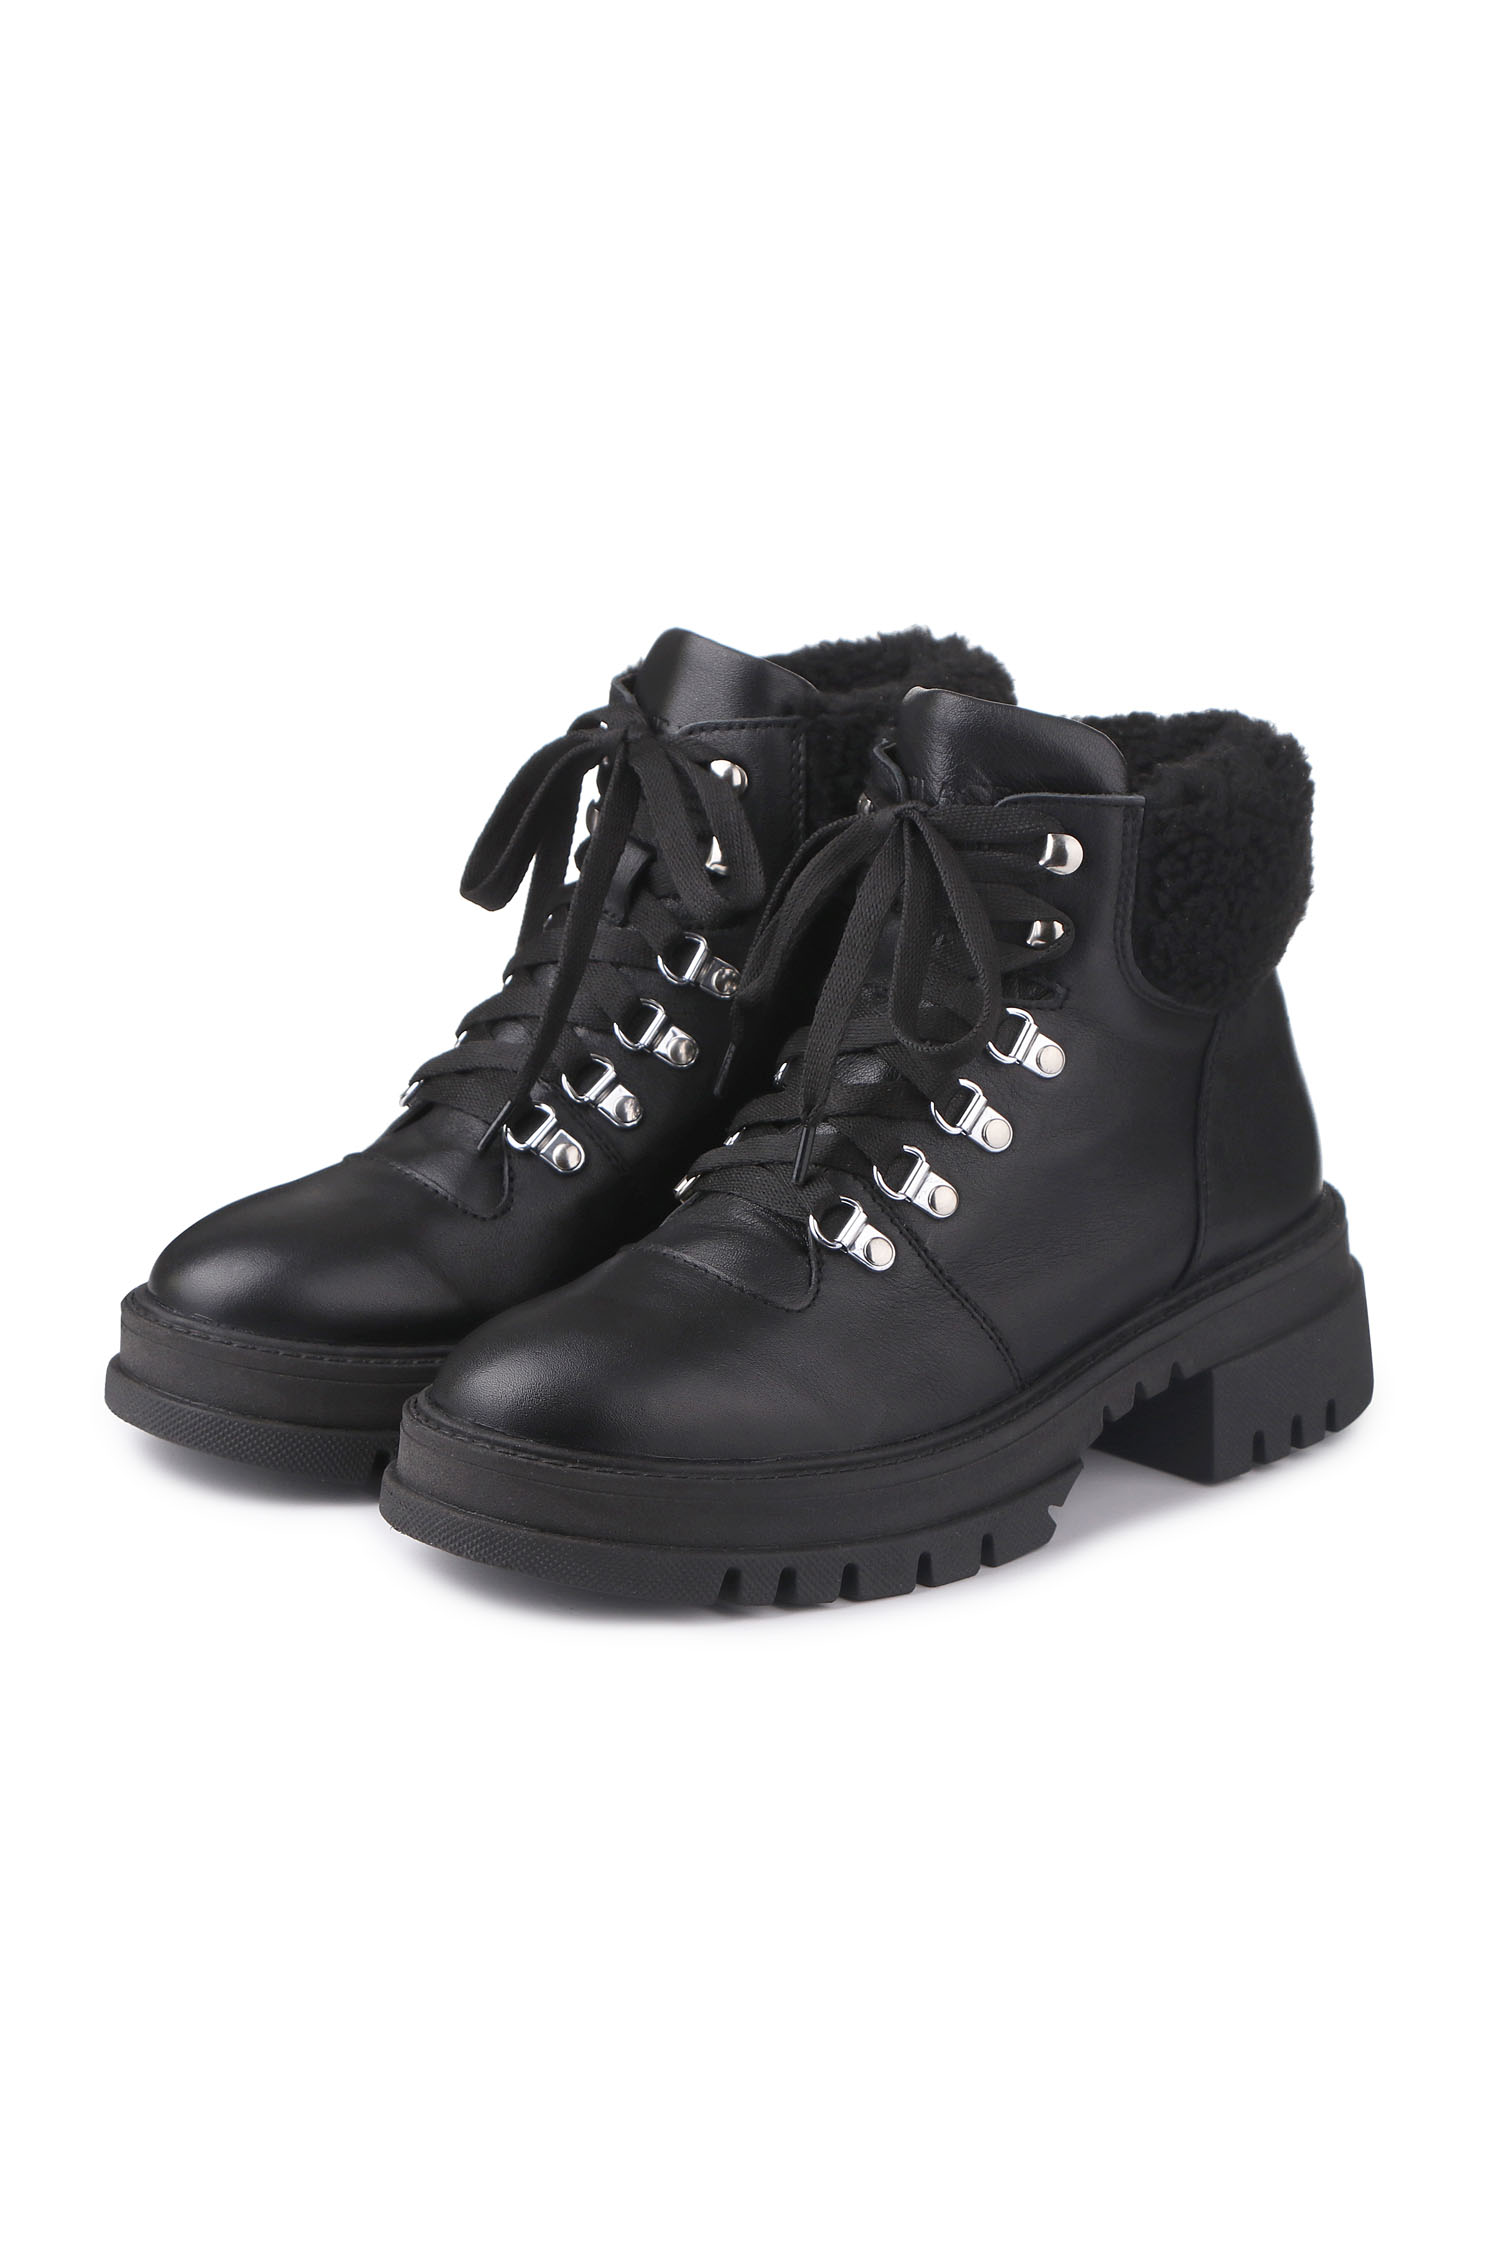 Зимові черевики Hiking boots чорні з чорним хутром - THE LACE фото 123286